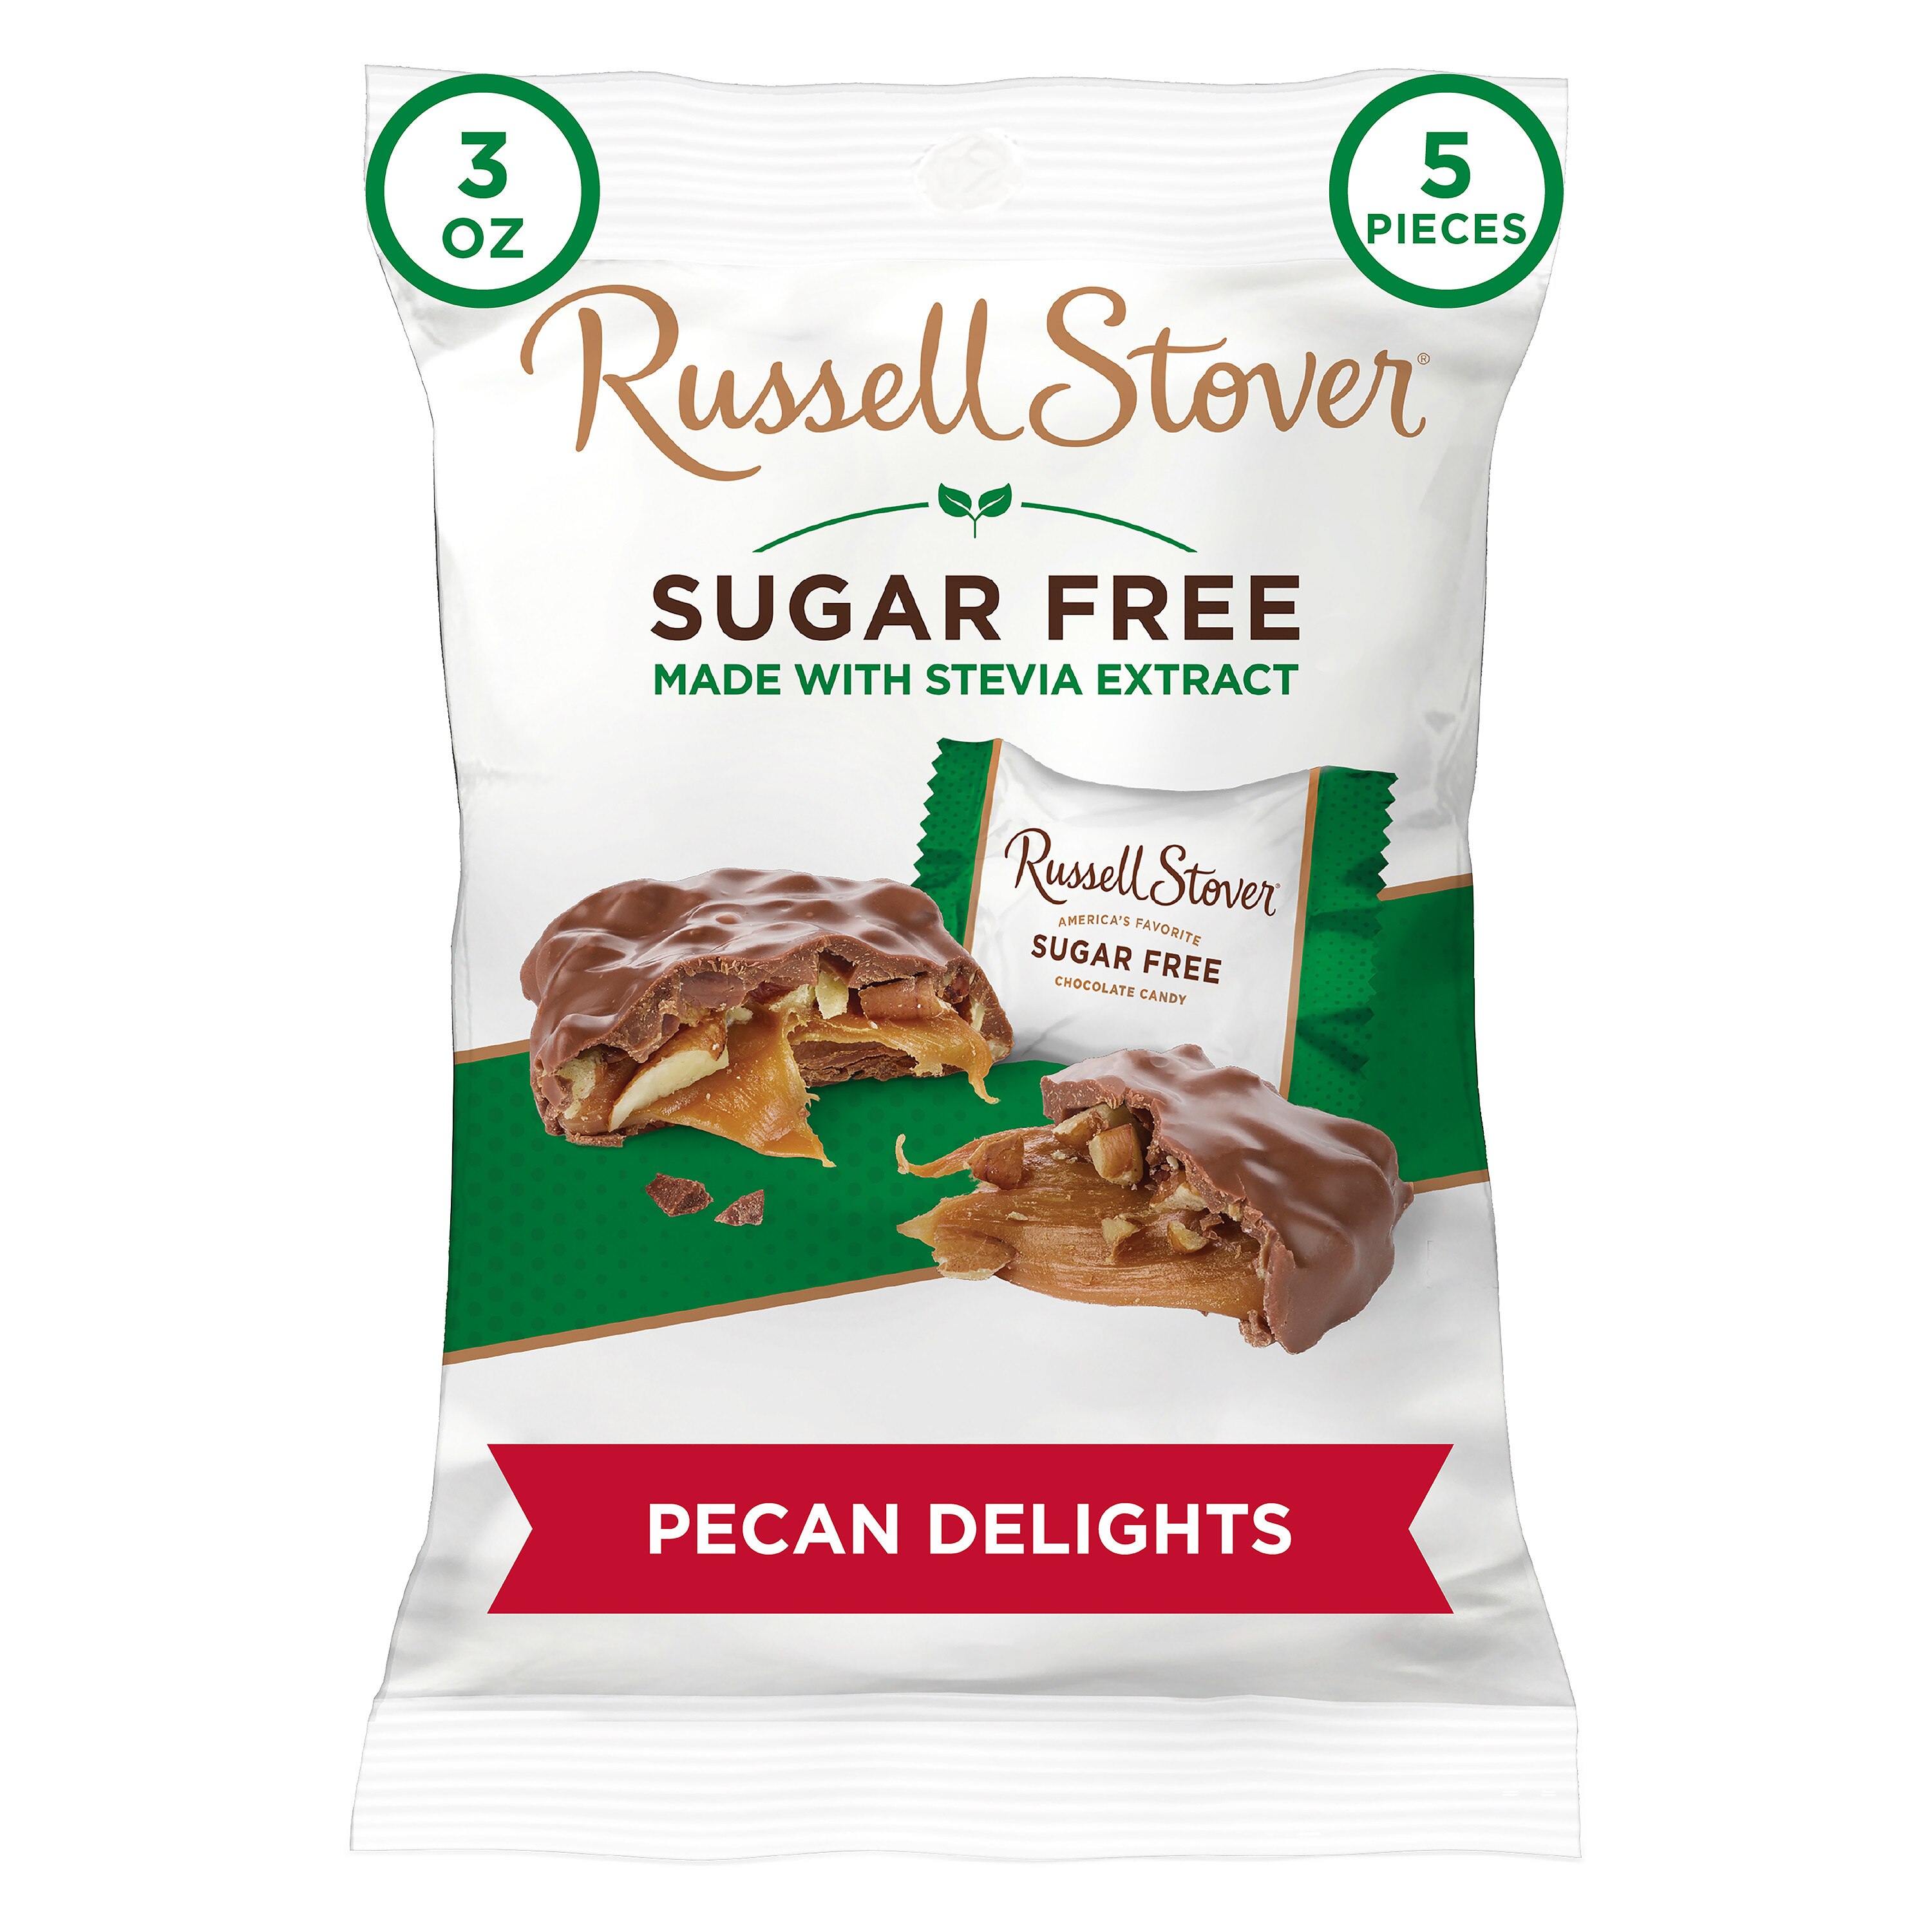 Russell Stover Pecan Delights sin azúcar, con estevia, 3 oz